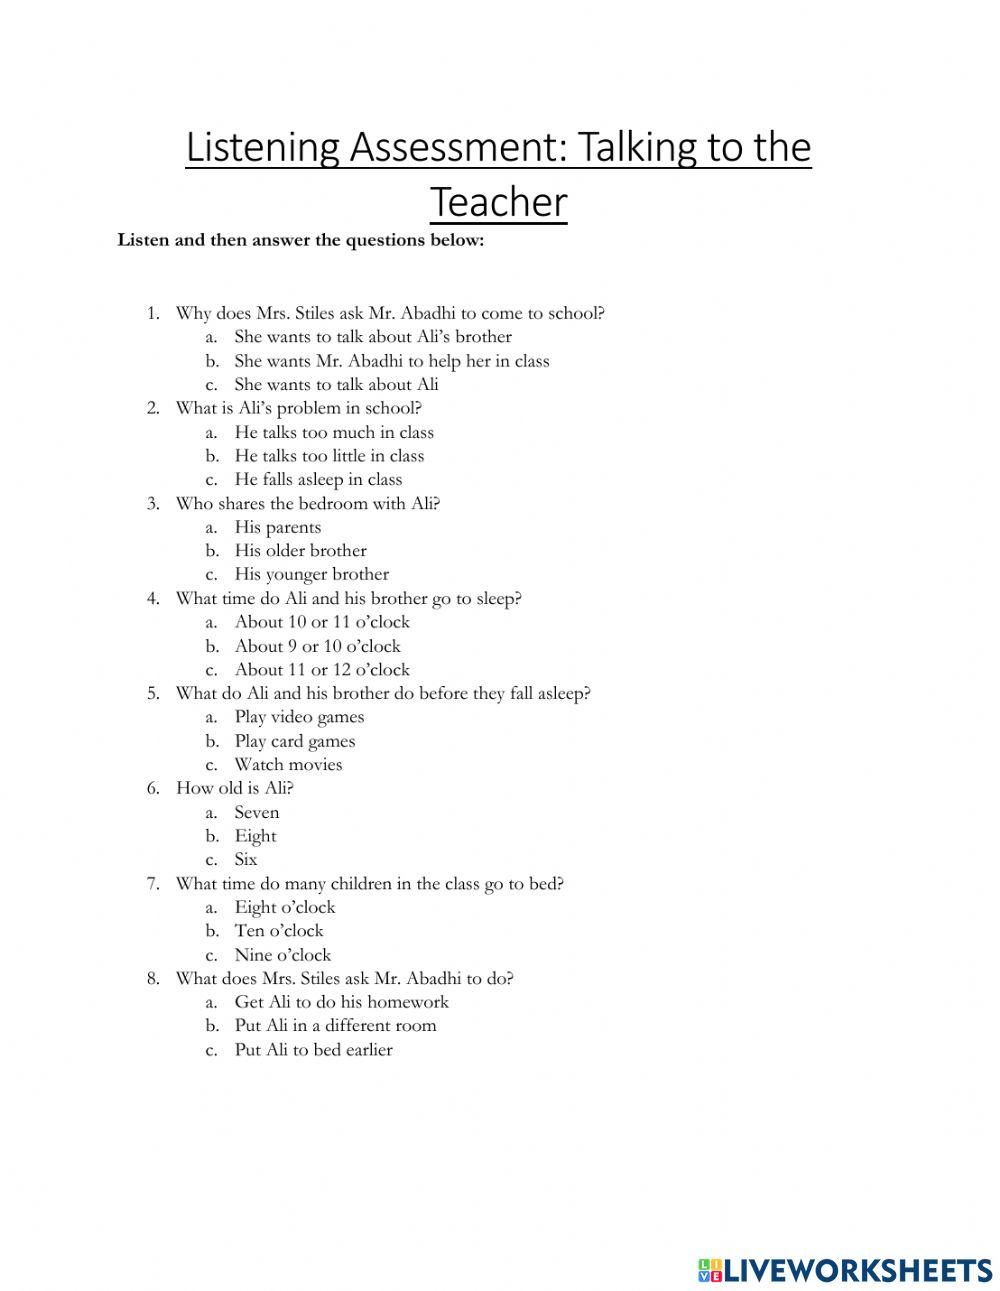 Listening Assessment: Talking to the Teacher